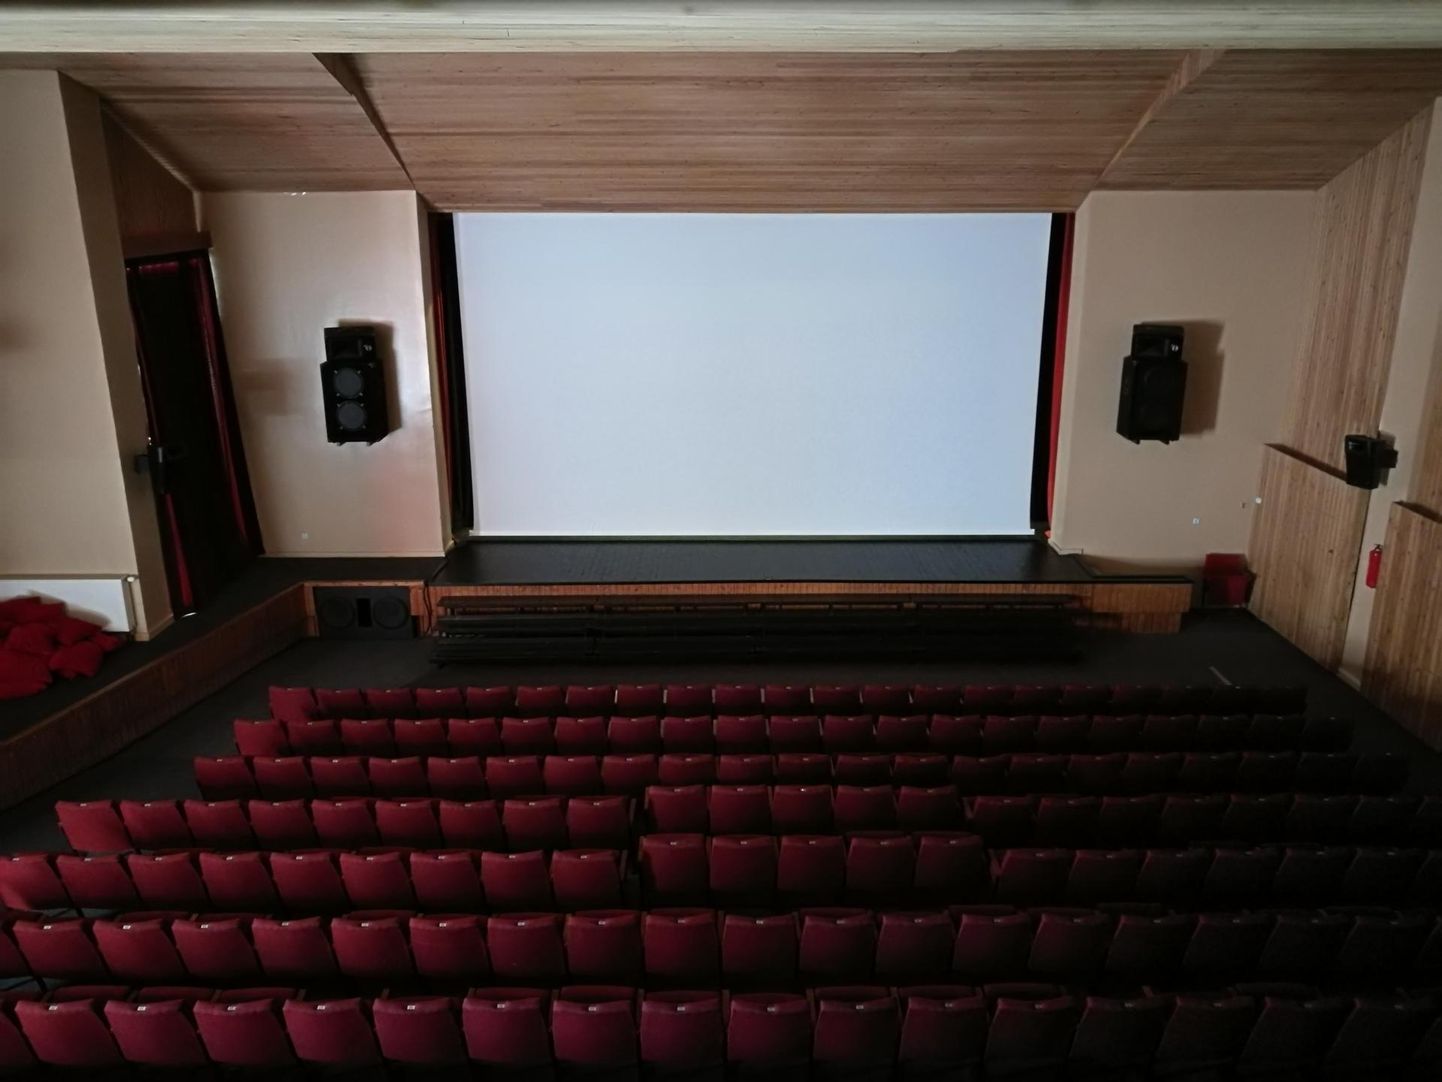 Vändra kultuurimaja saal sai kino näitamiseks uue ja parema ekraani.